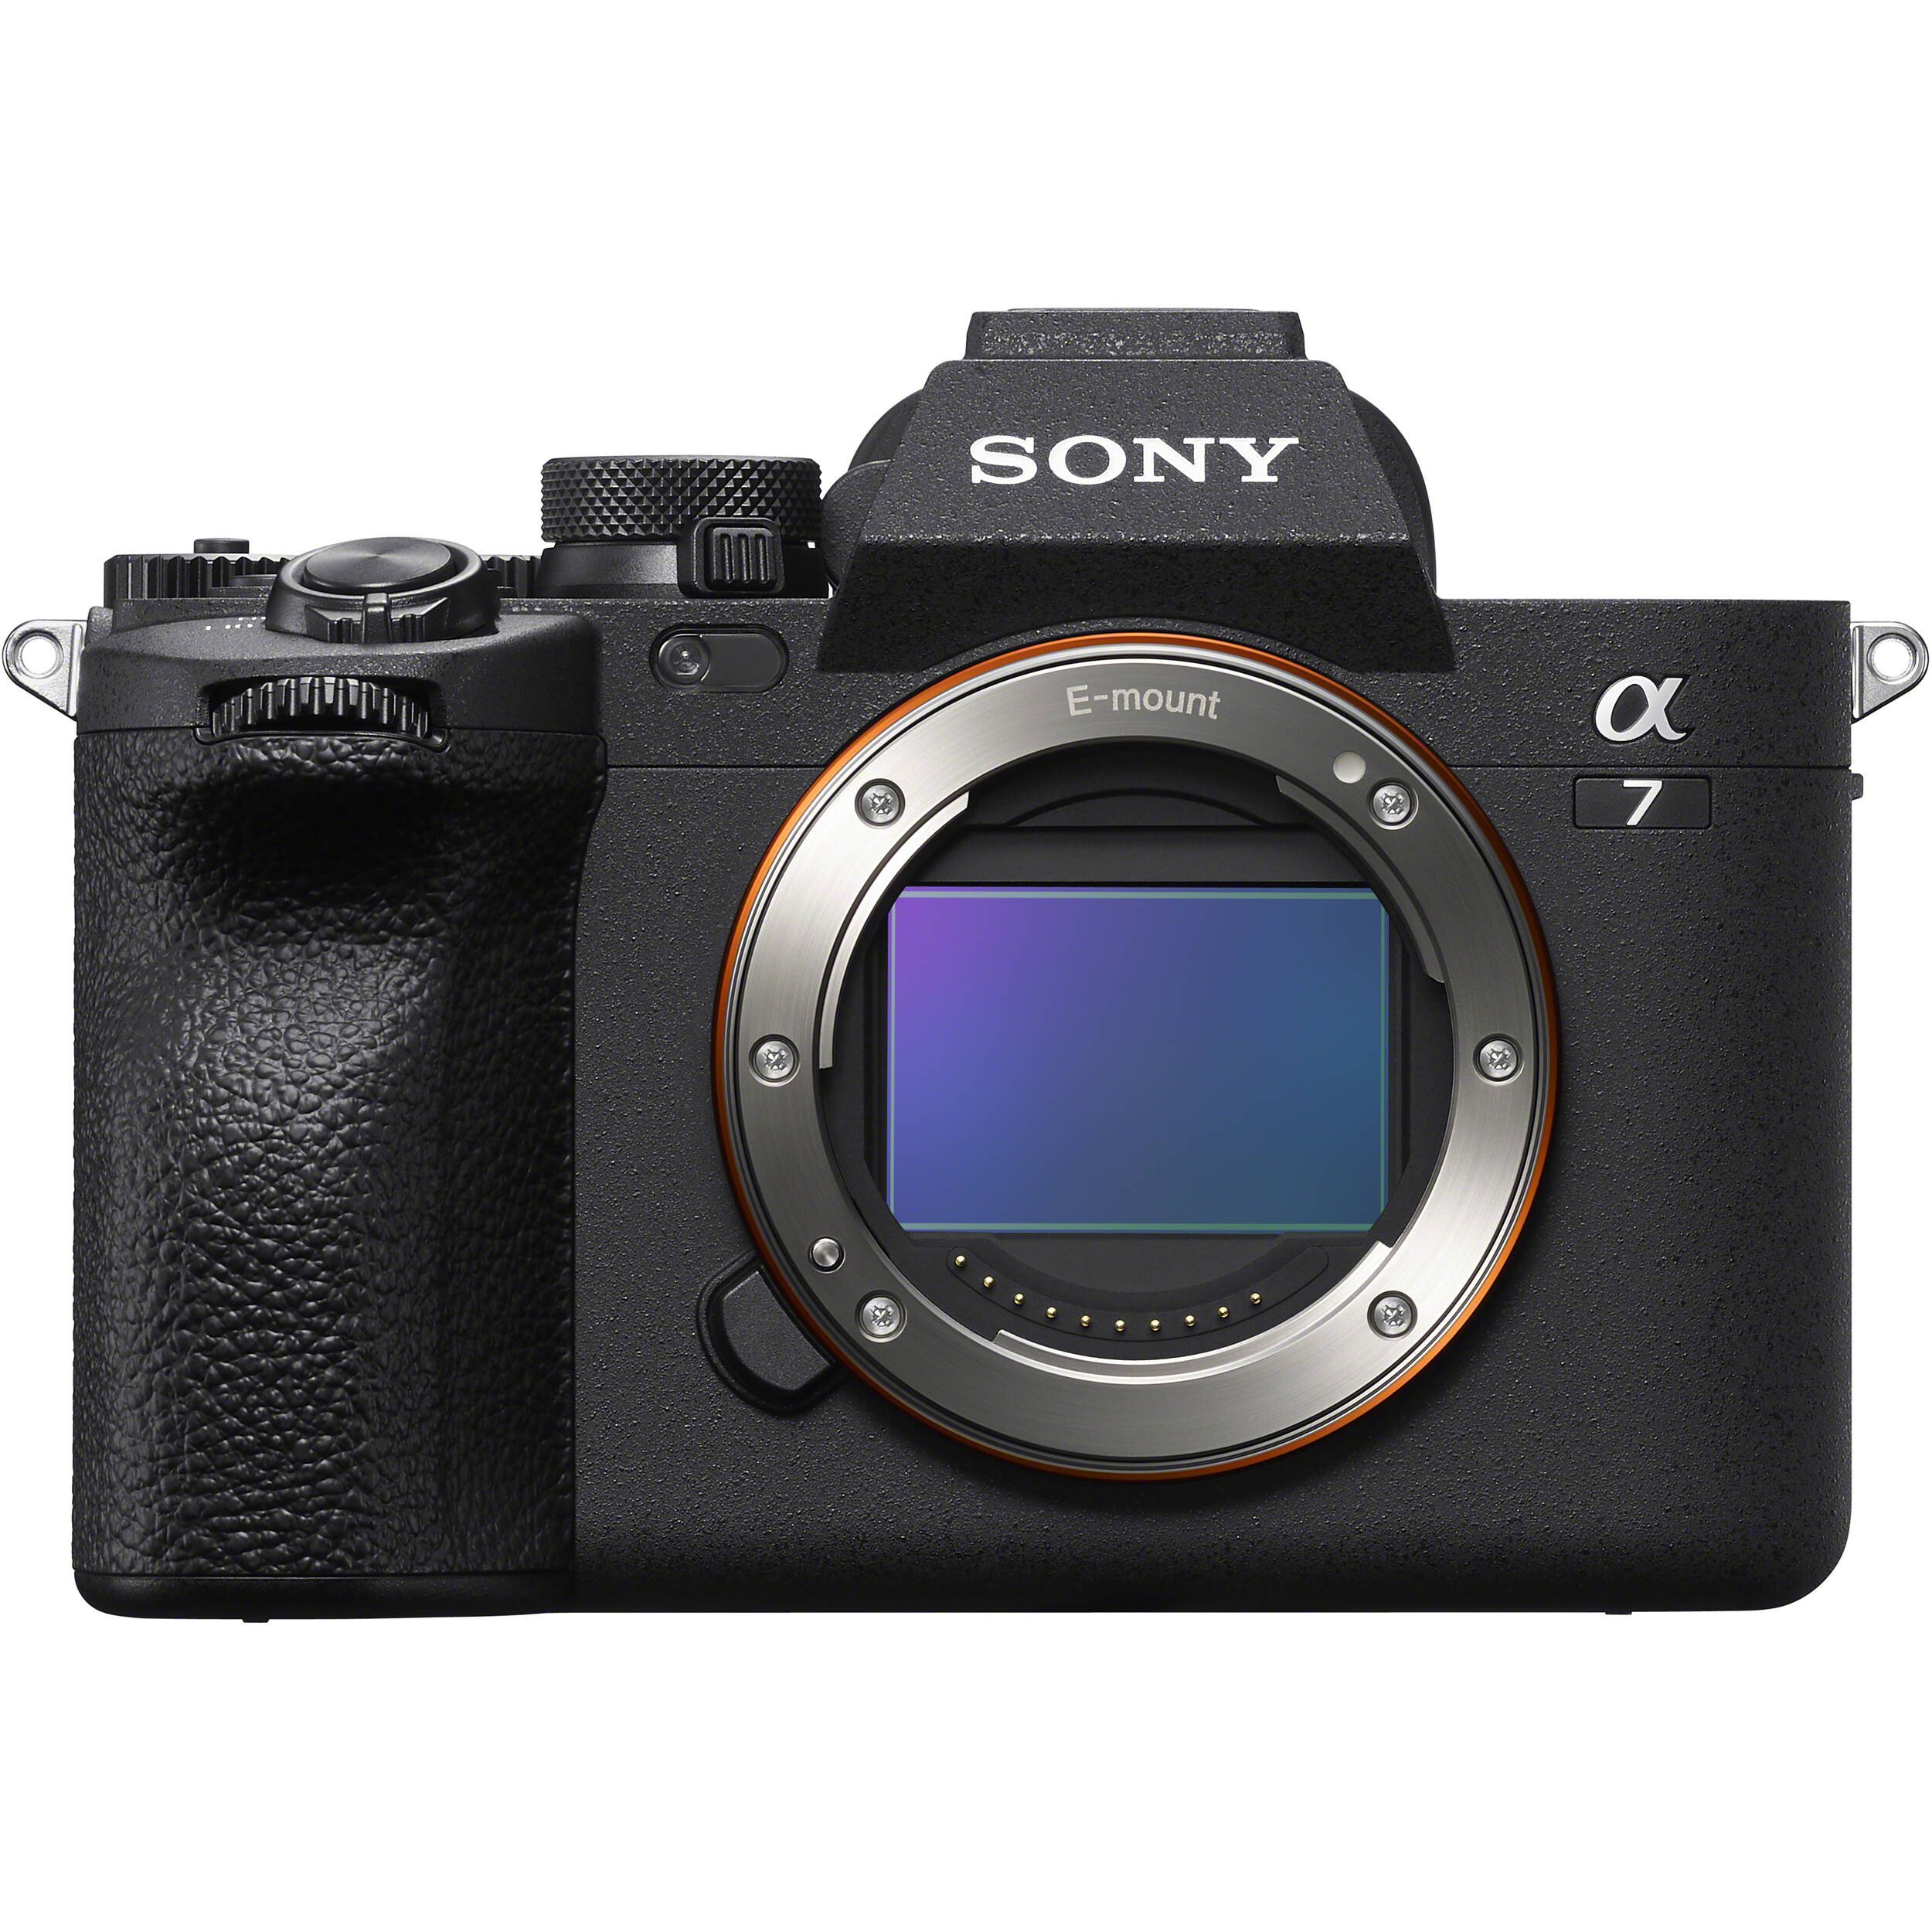 Máy ảnh Sony Alpha A7 Mark IV là sự lựa chọn hoàn hảo cho những người đam mê nhiếp ảnh. Với nhiều tính năng hiện đại và khả năng chụp ảnh đặc sắc, sự yên tâm về chất lượng hình ảnh được đảm bảo. Khám phá các sản phẩm của chúng tôi trên trang web để tìm ra một chiếc máy ảnh phù hợp với nhu cầu của bạn.